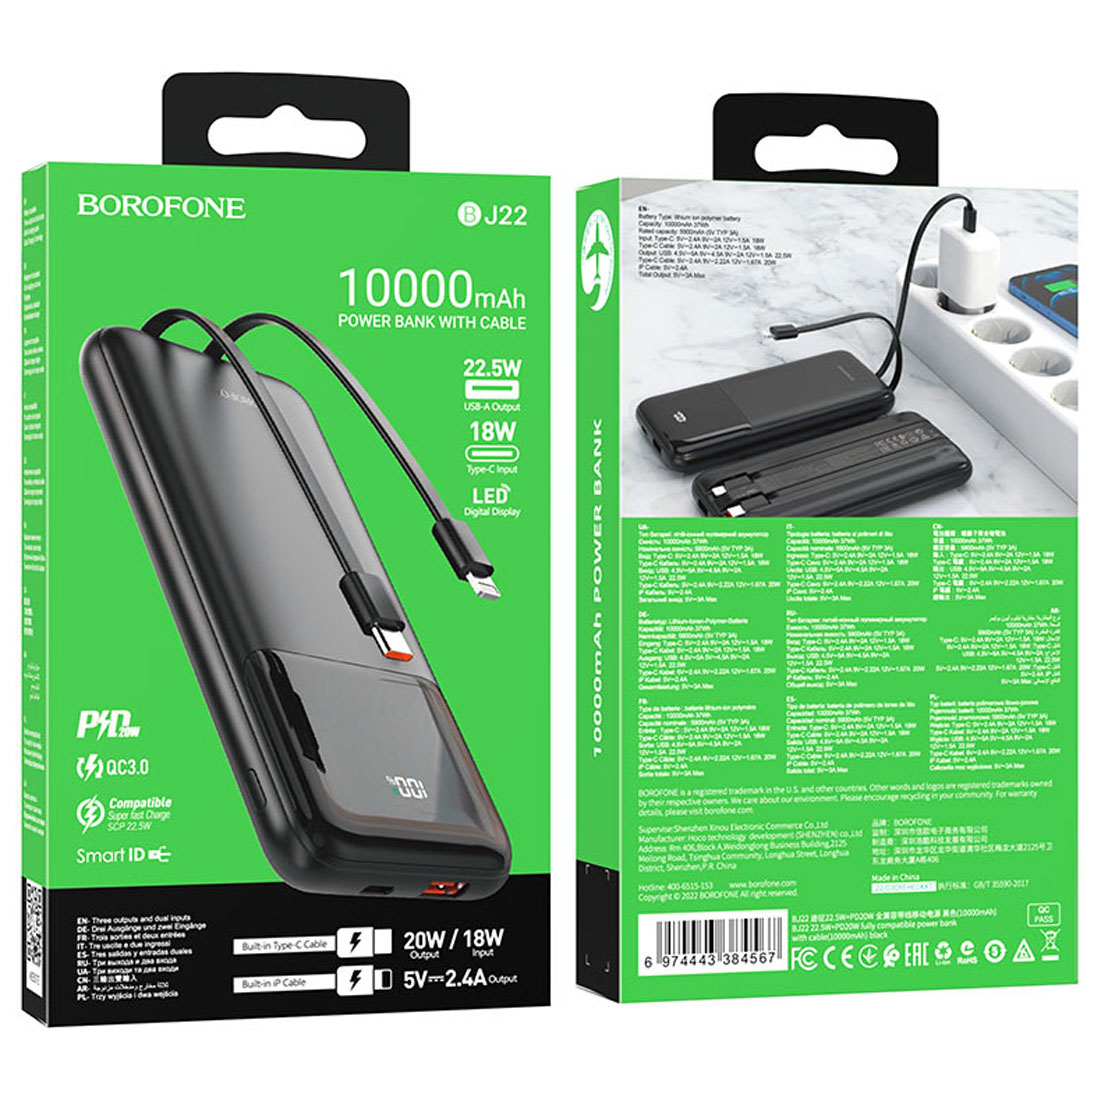 Внешний портативный аккумулятор, Power Bank BOROFONE BJ22 со встроенными кабелями USB Type C, Lightning 8 pin, 10000 mAh, LED дисплей, 22.5W, PD, QC3.0, цвет черный